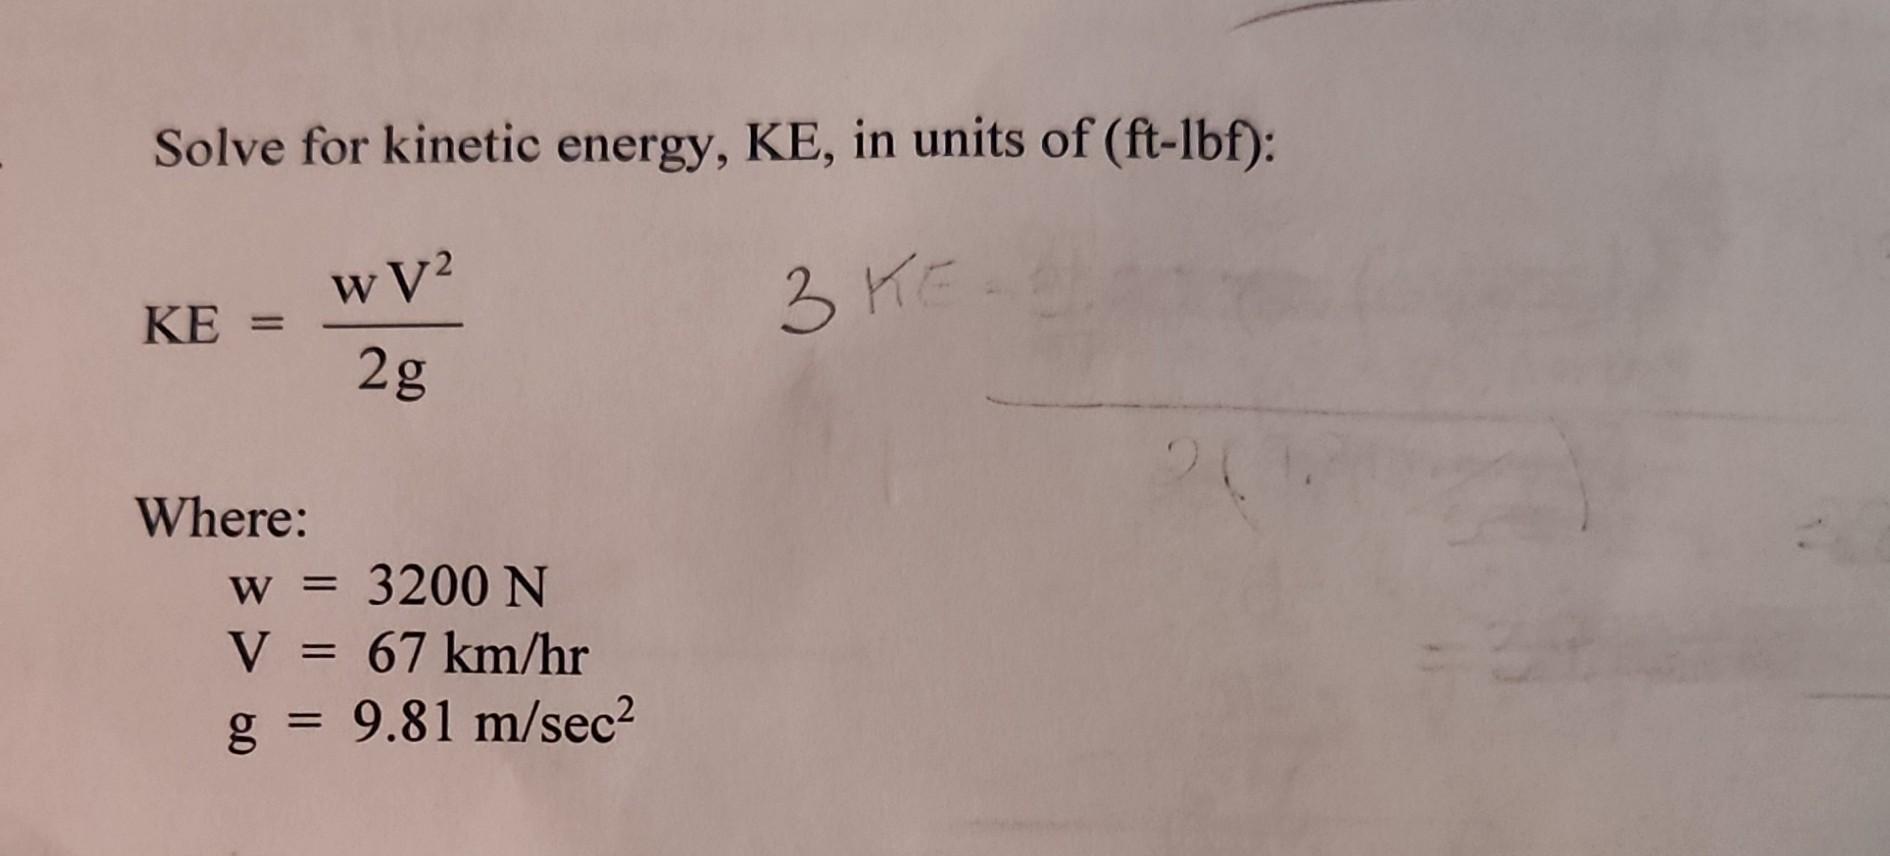 Solve for kinetic energy, KE, in units of (ft-lbf): 3 KE KE = Where: wV2 2g w = 3200 N V = 67 km/hr g = 9.81